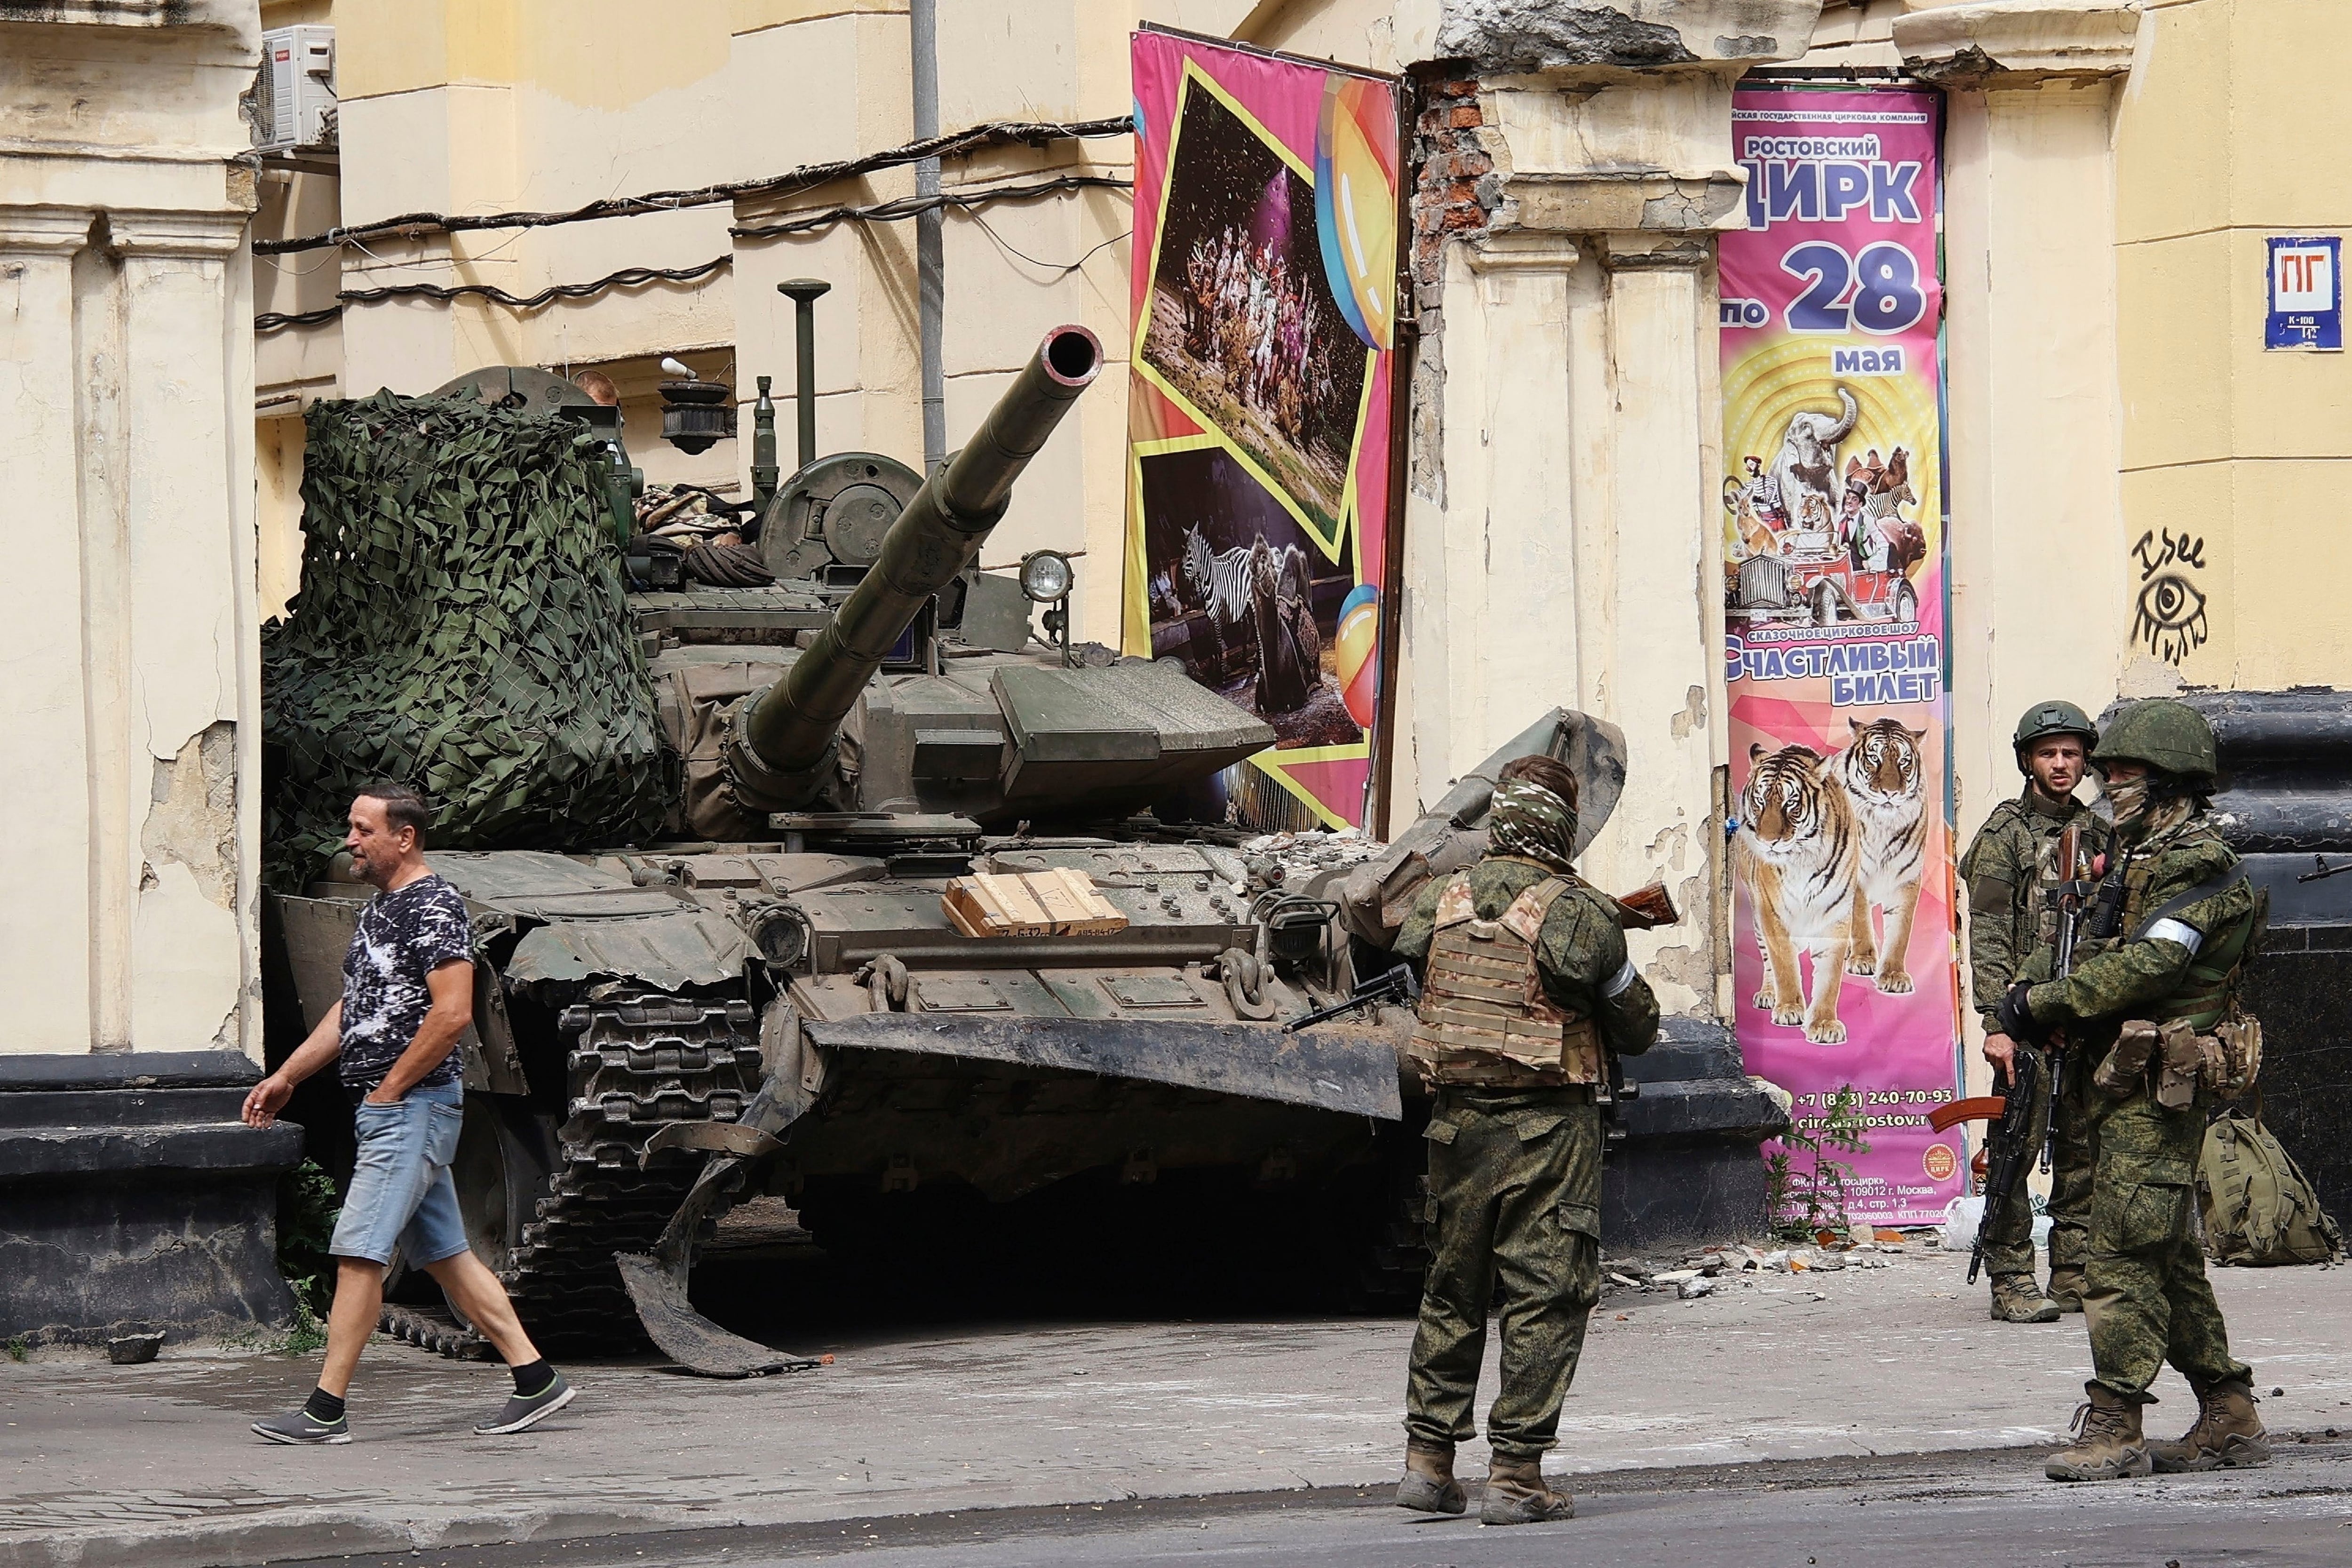 Efectivos de la guardia del Grupo Wagner están frente a un tanque en una calle de Rostov, Rusia, 24 de junio de 2023. (Vasily Deryugin, Kommersant Publishing House via AP, File)